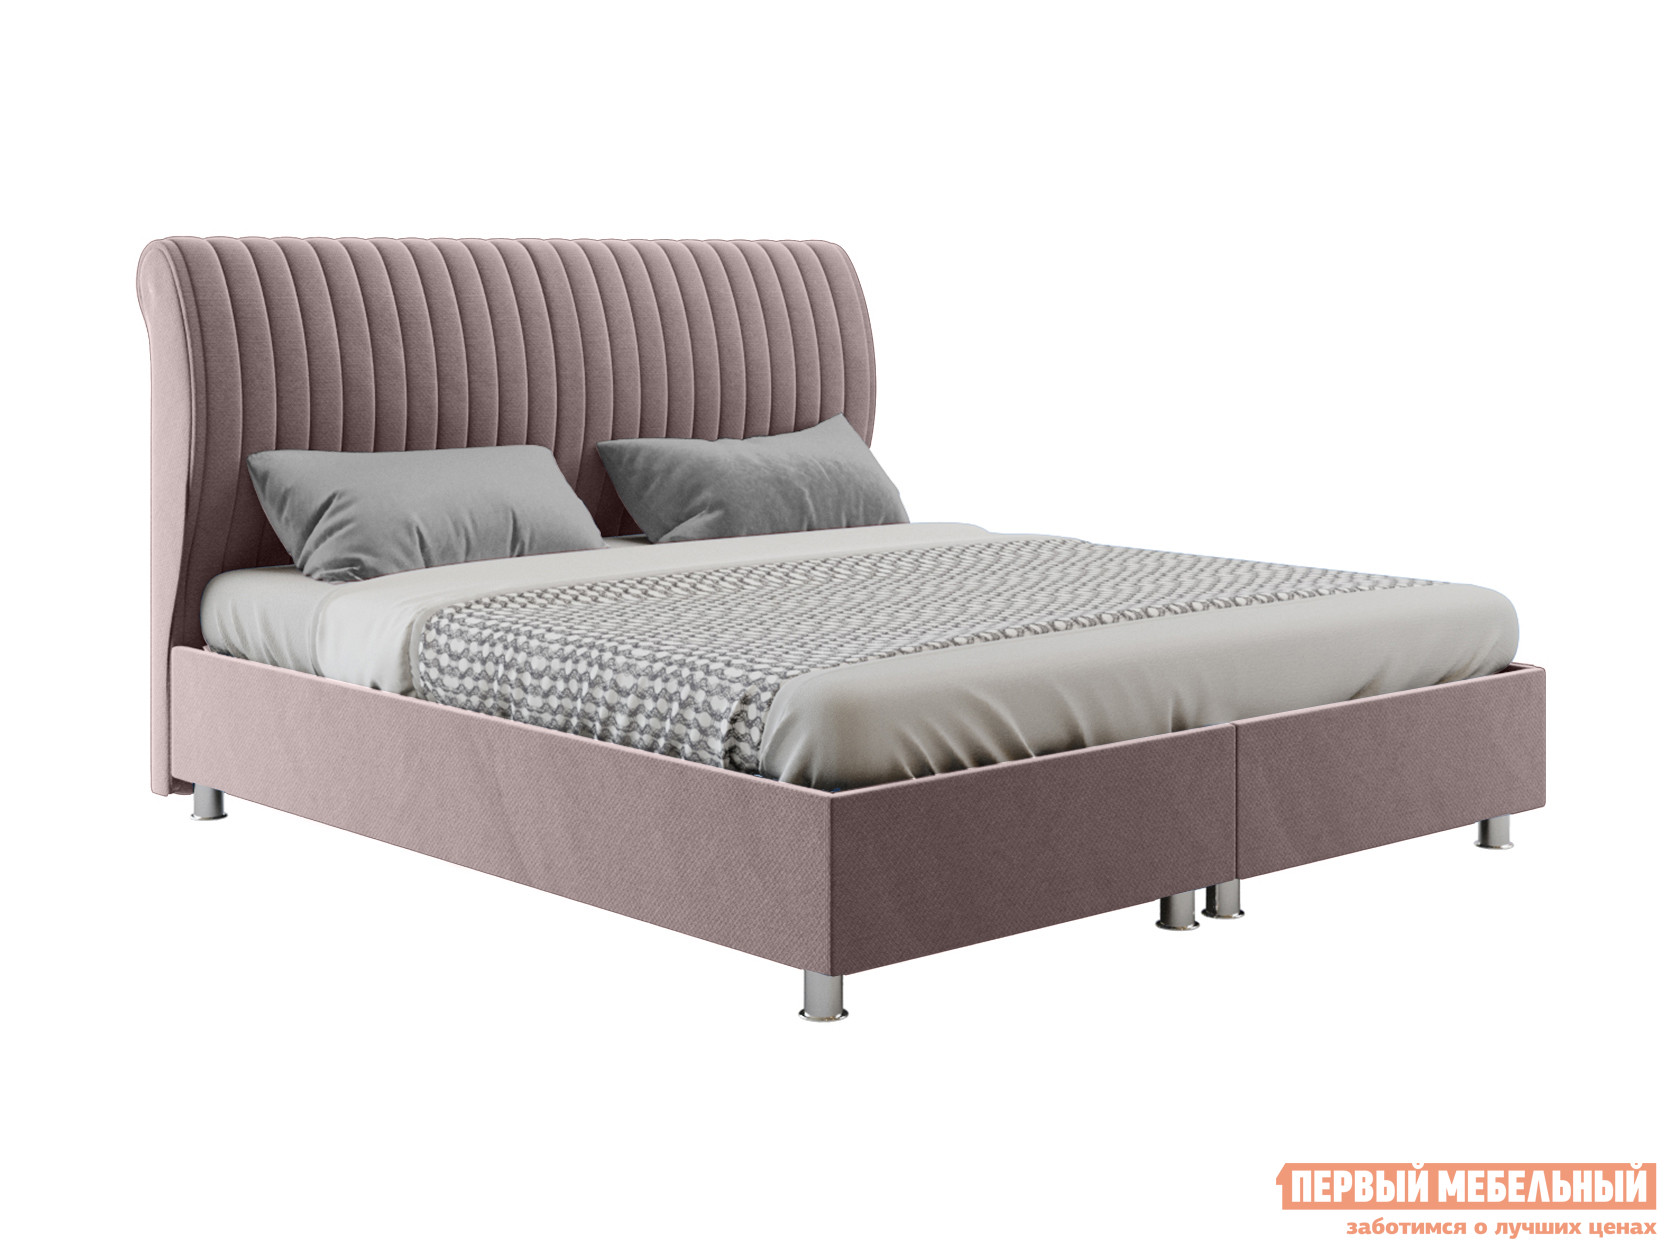 Двуспальная кровать  Кровать Валенсия с подъемным механизмом 140х200, 160х200, 180х200 Серый, 180х200 см